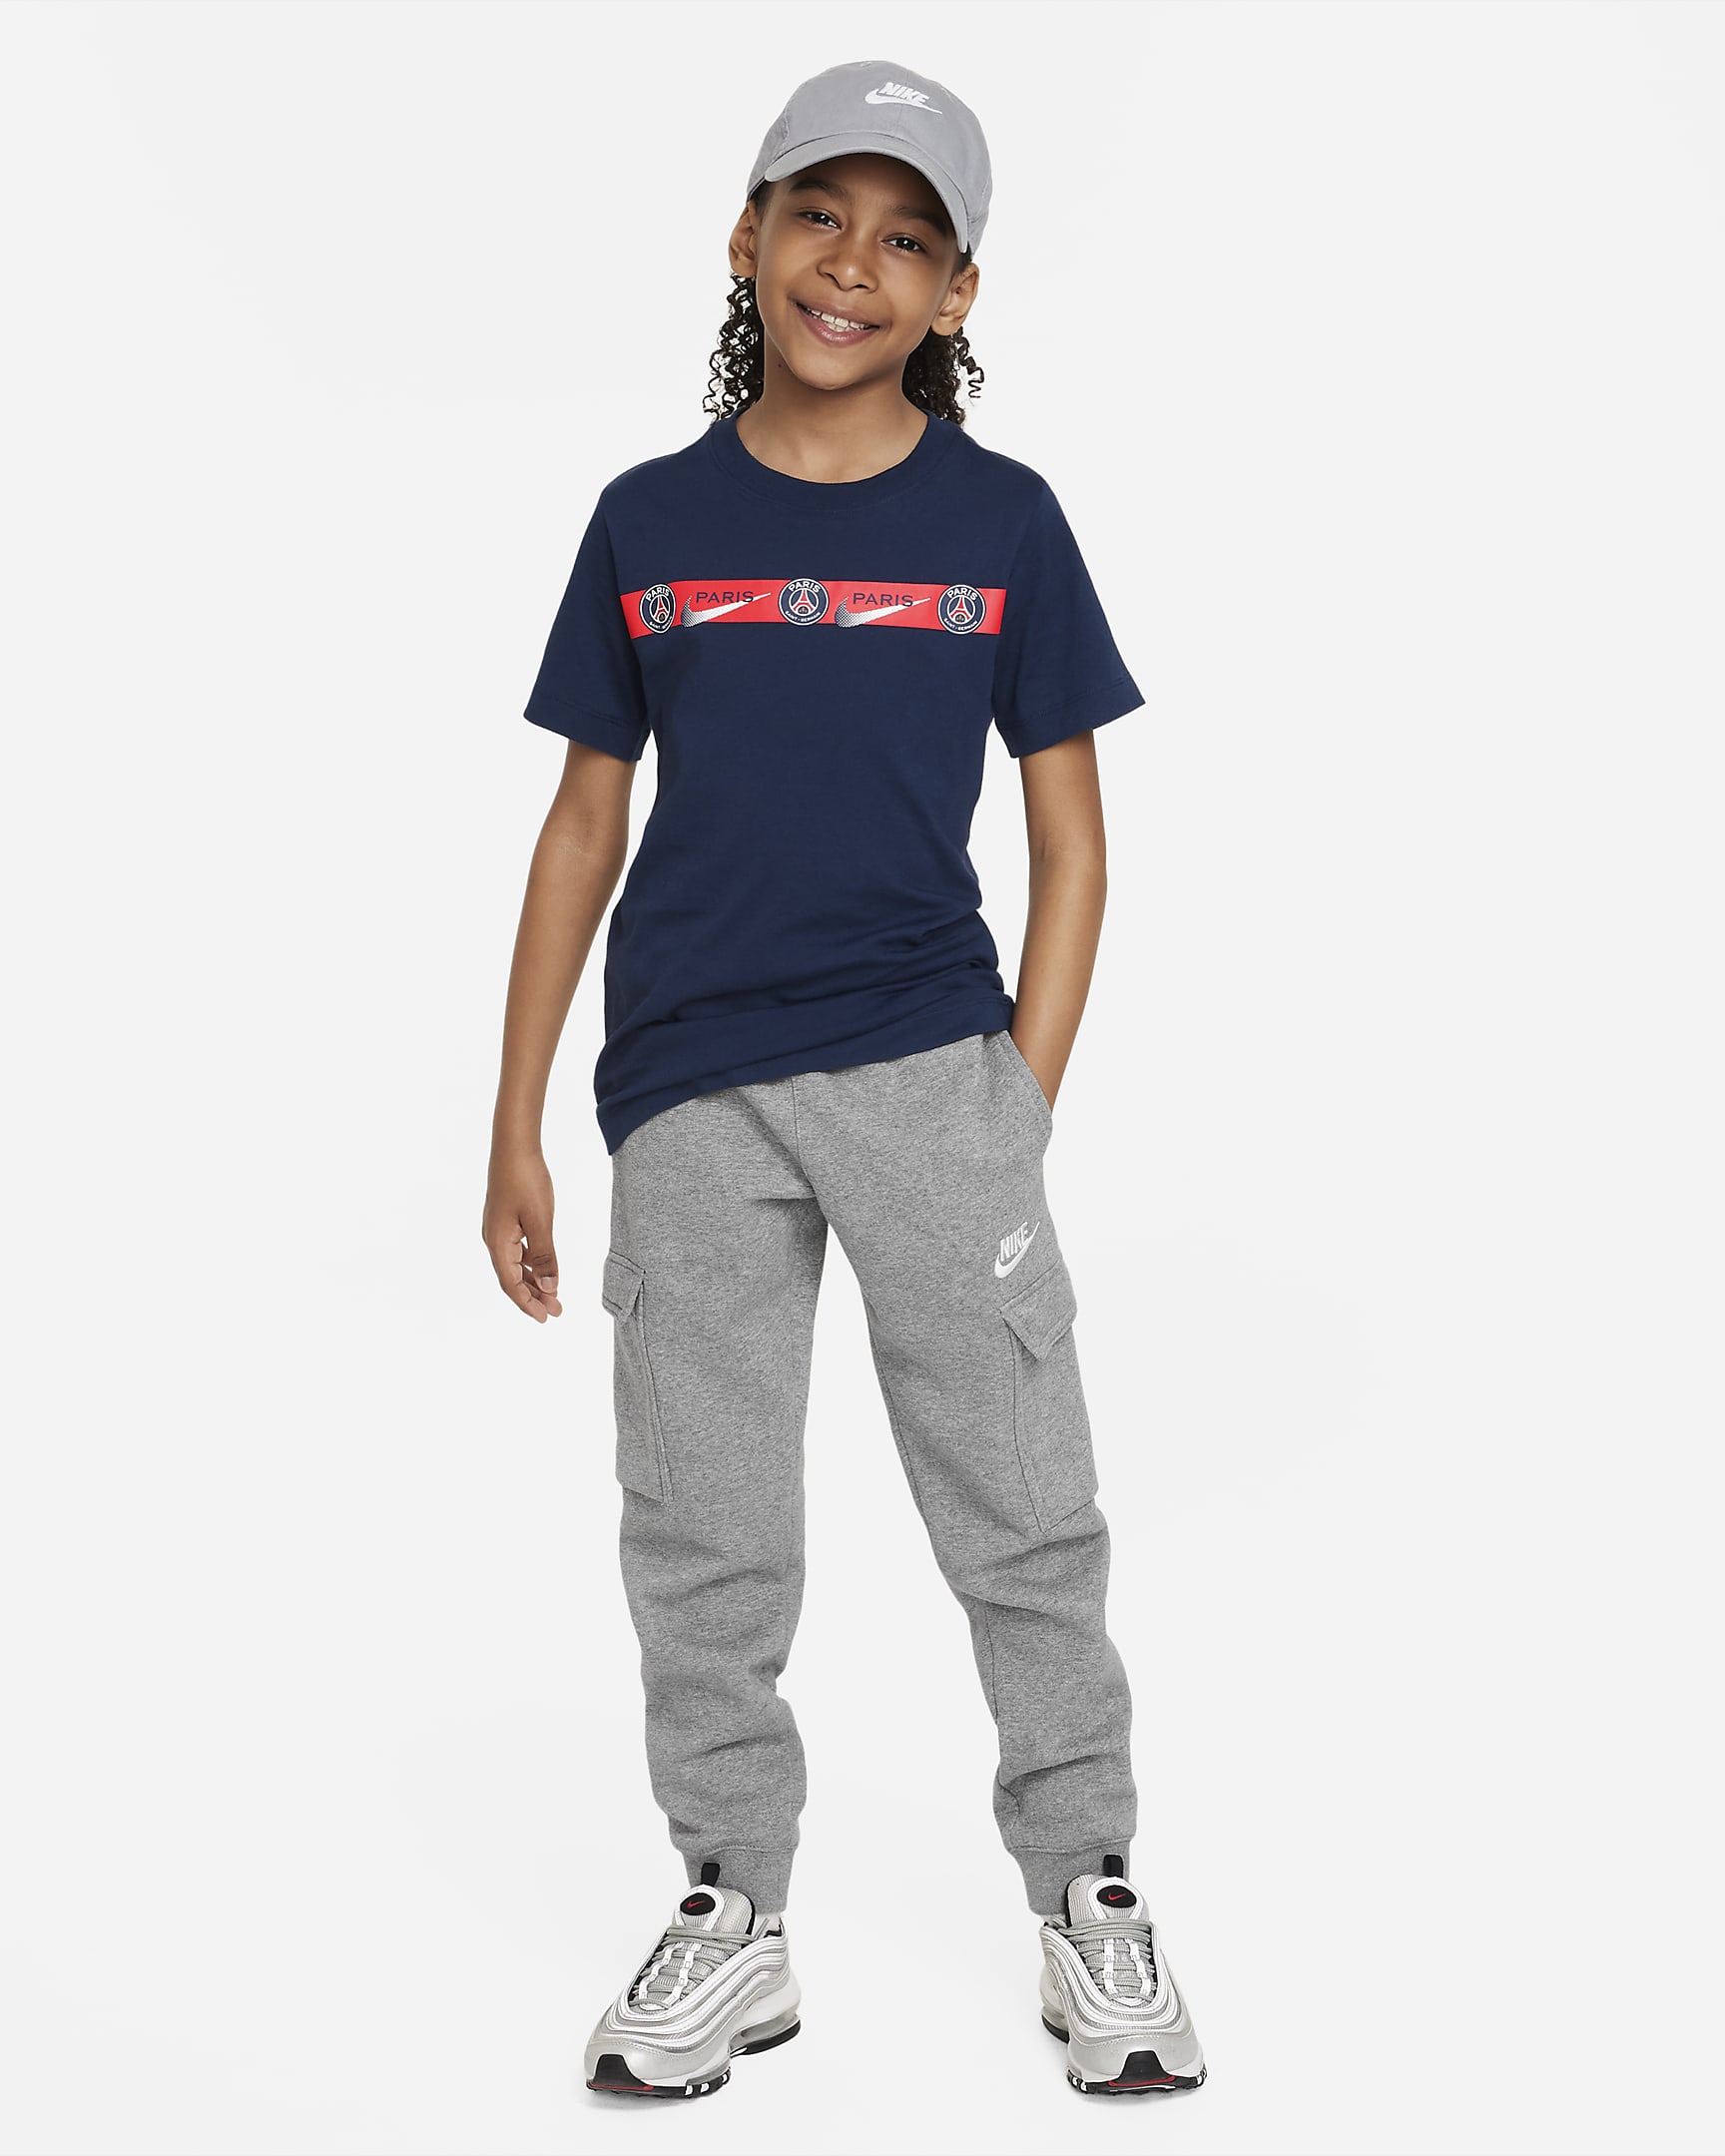 Paris Saint-Germain Big Kids' Nike Soccer T-Shirt. Nike.com